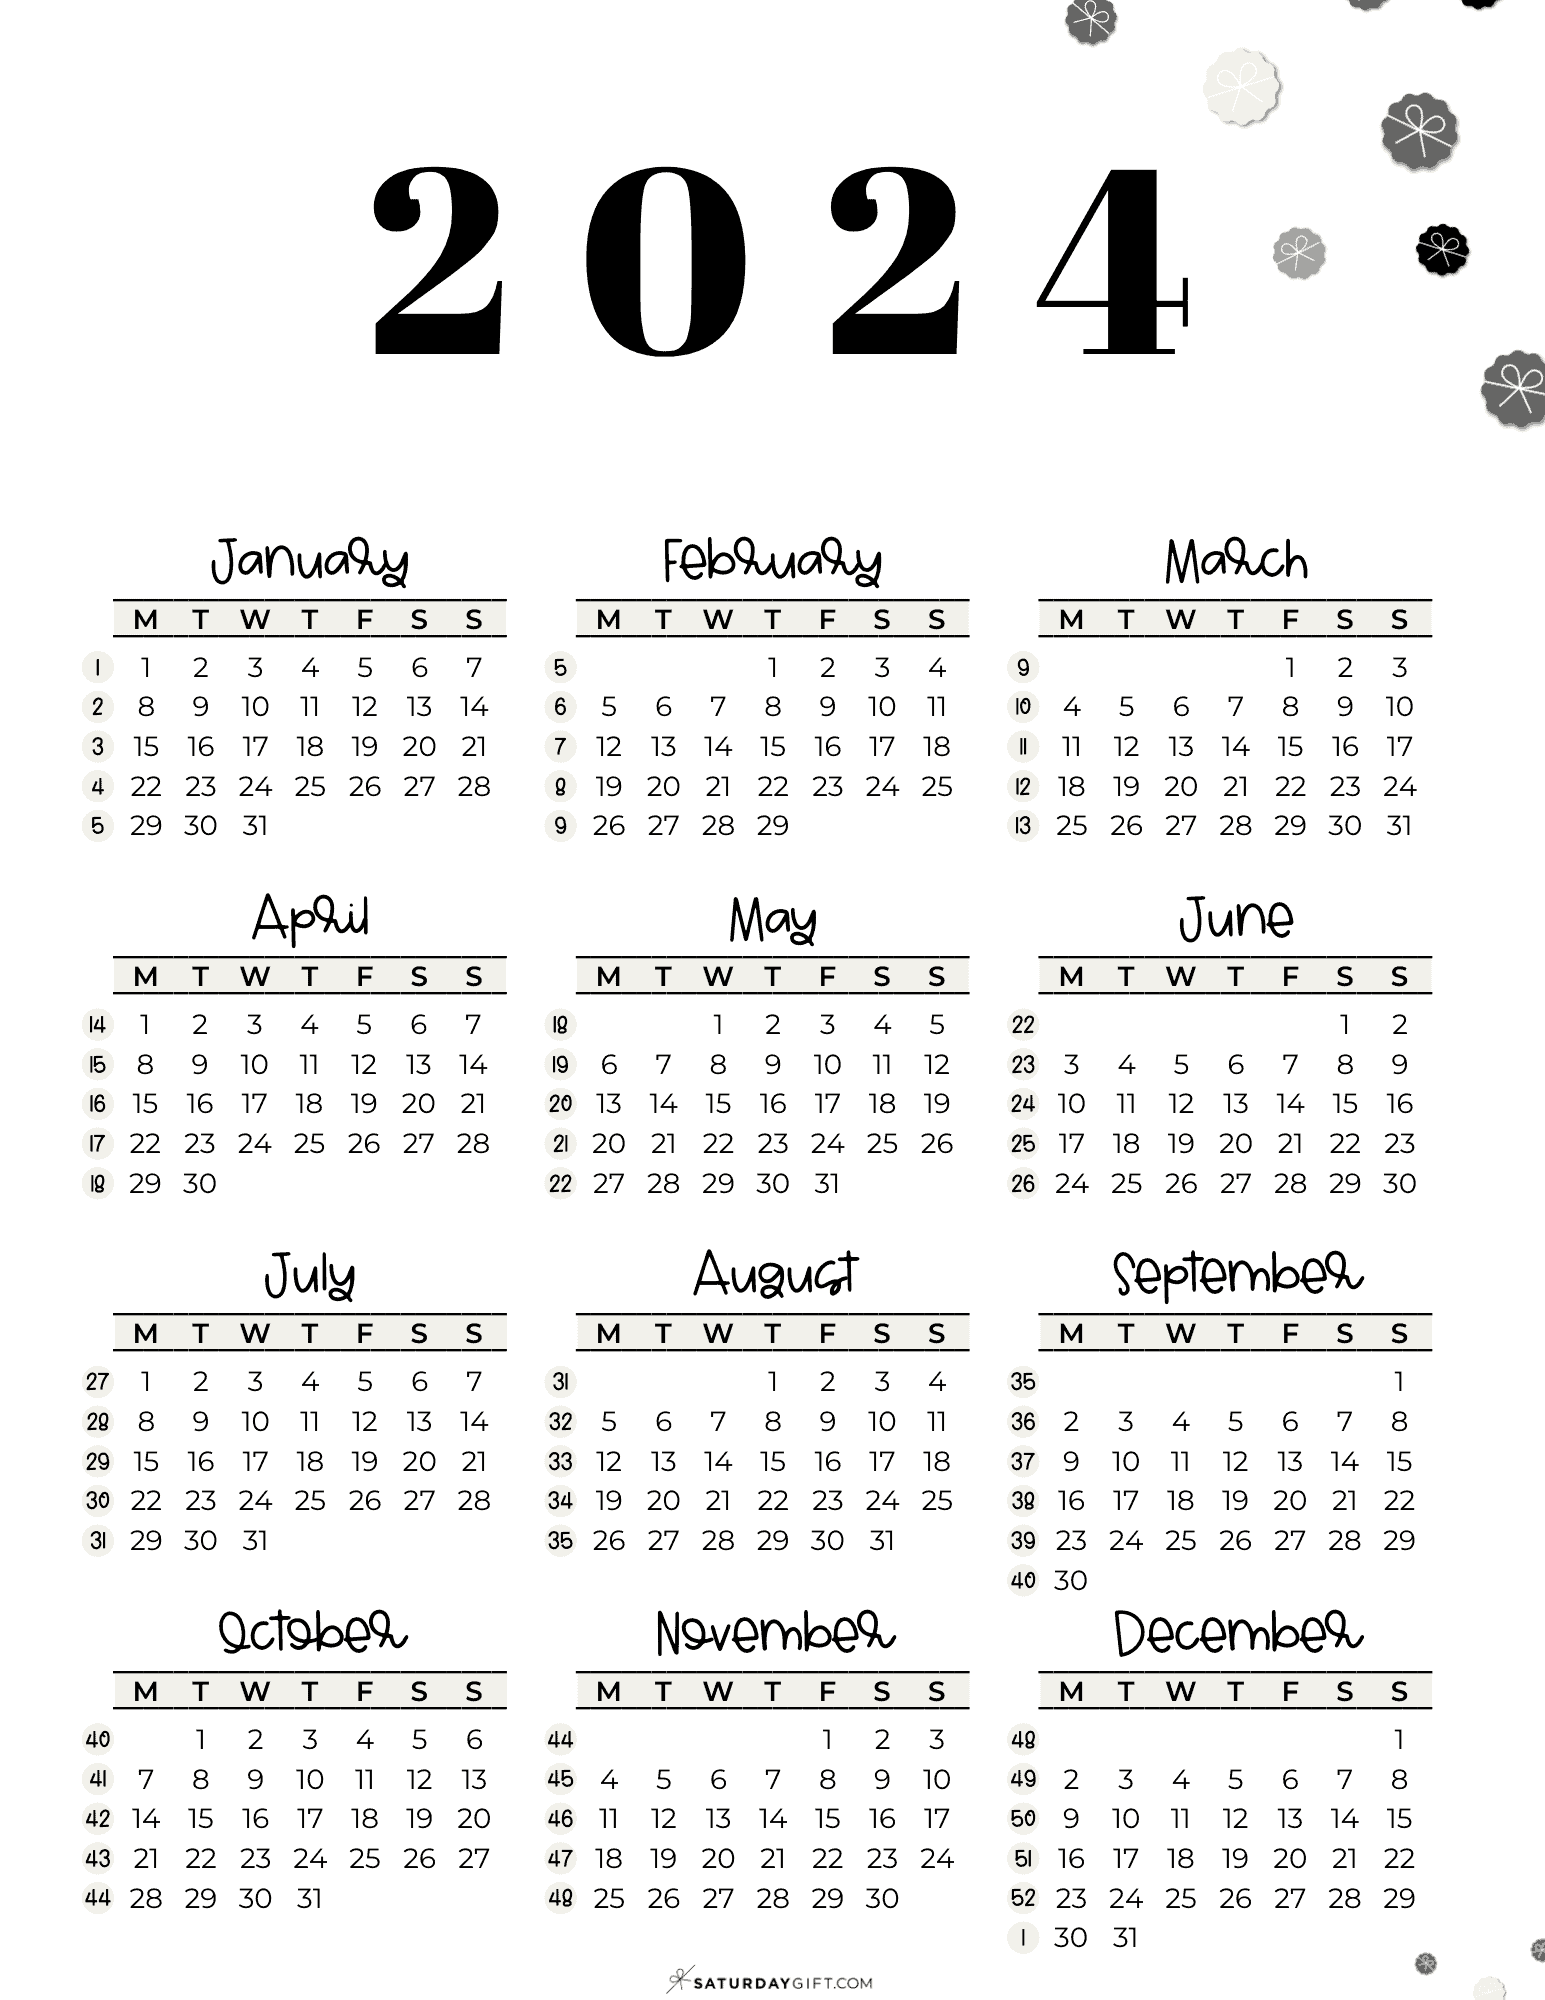 2024 Calendar Printable With Week Numbers List Dec 2024 Calendar - Free Printable 2024 Calendar With Week Numbers